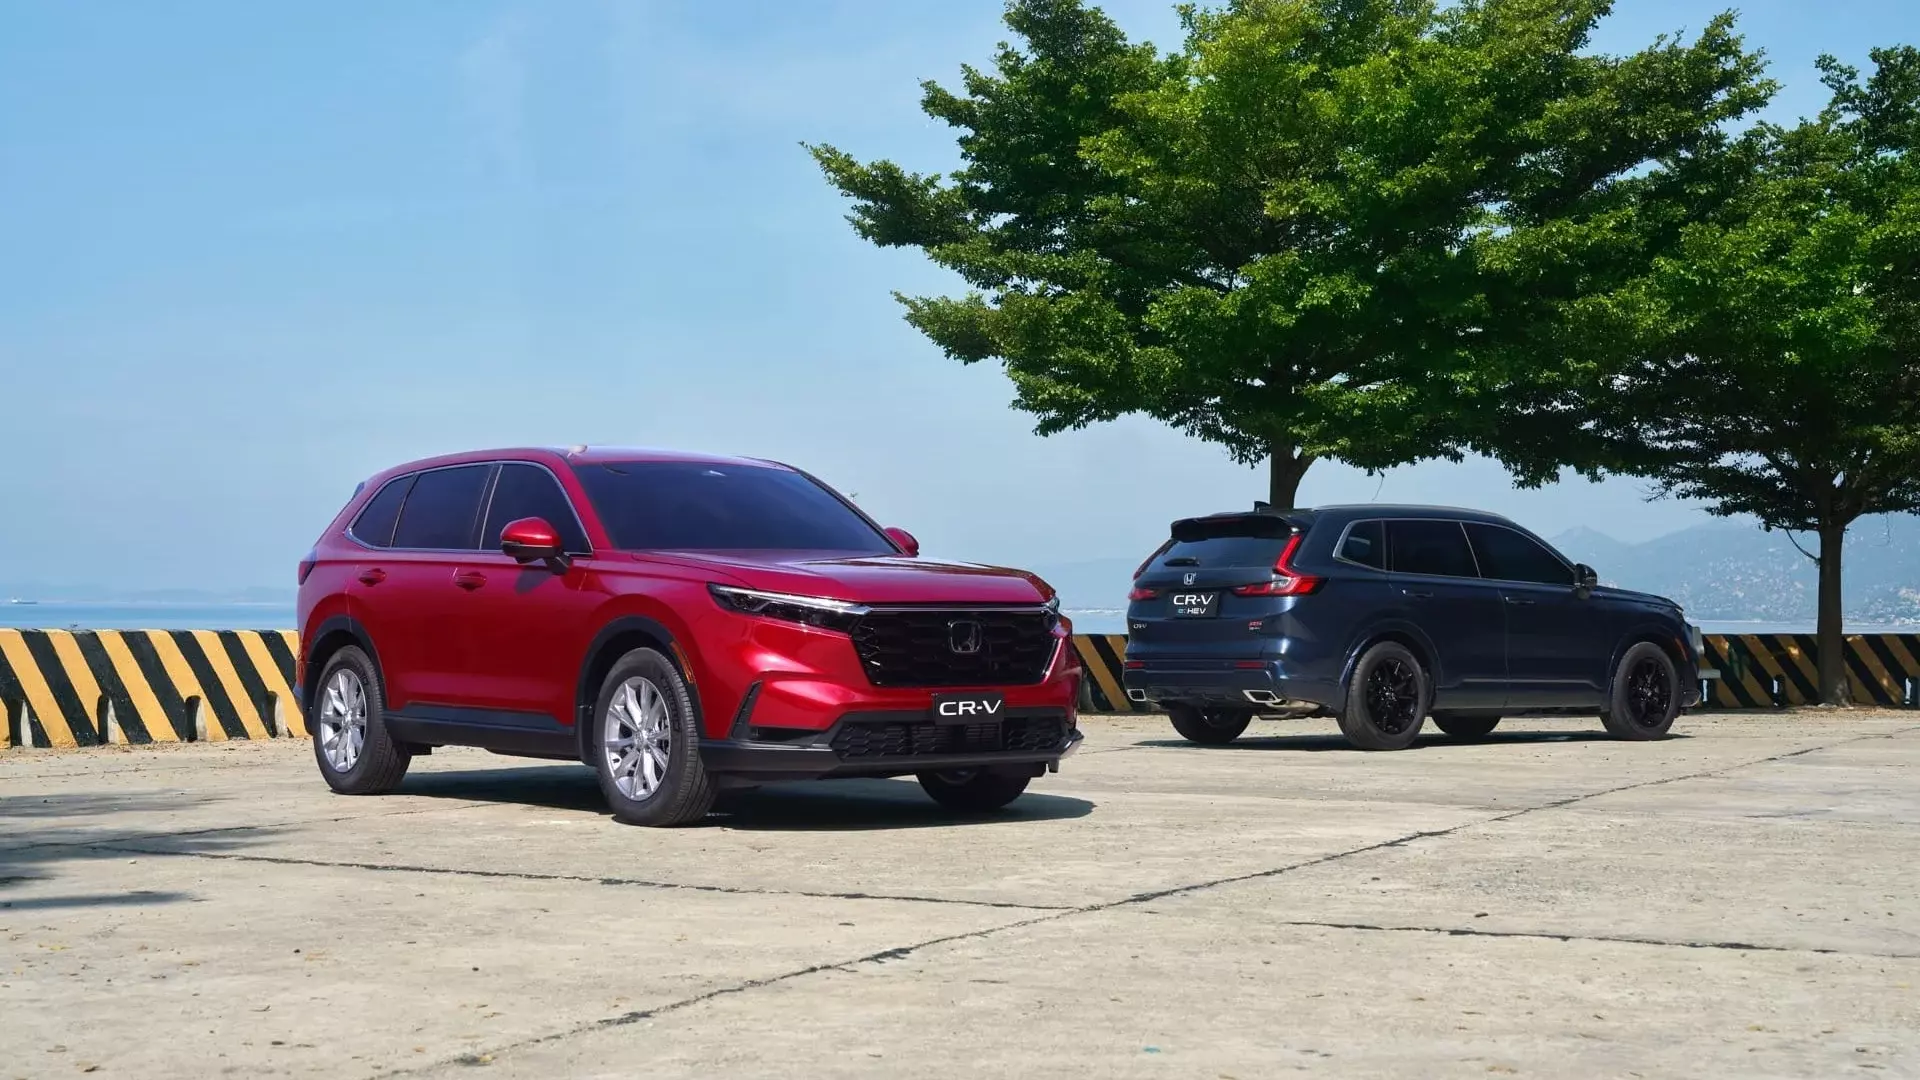 Ngoại thất Honda CRV 2023 lột xác thiết kế mới hoàn toàn so với thế hệ cũ